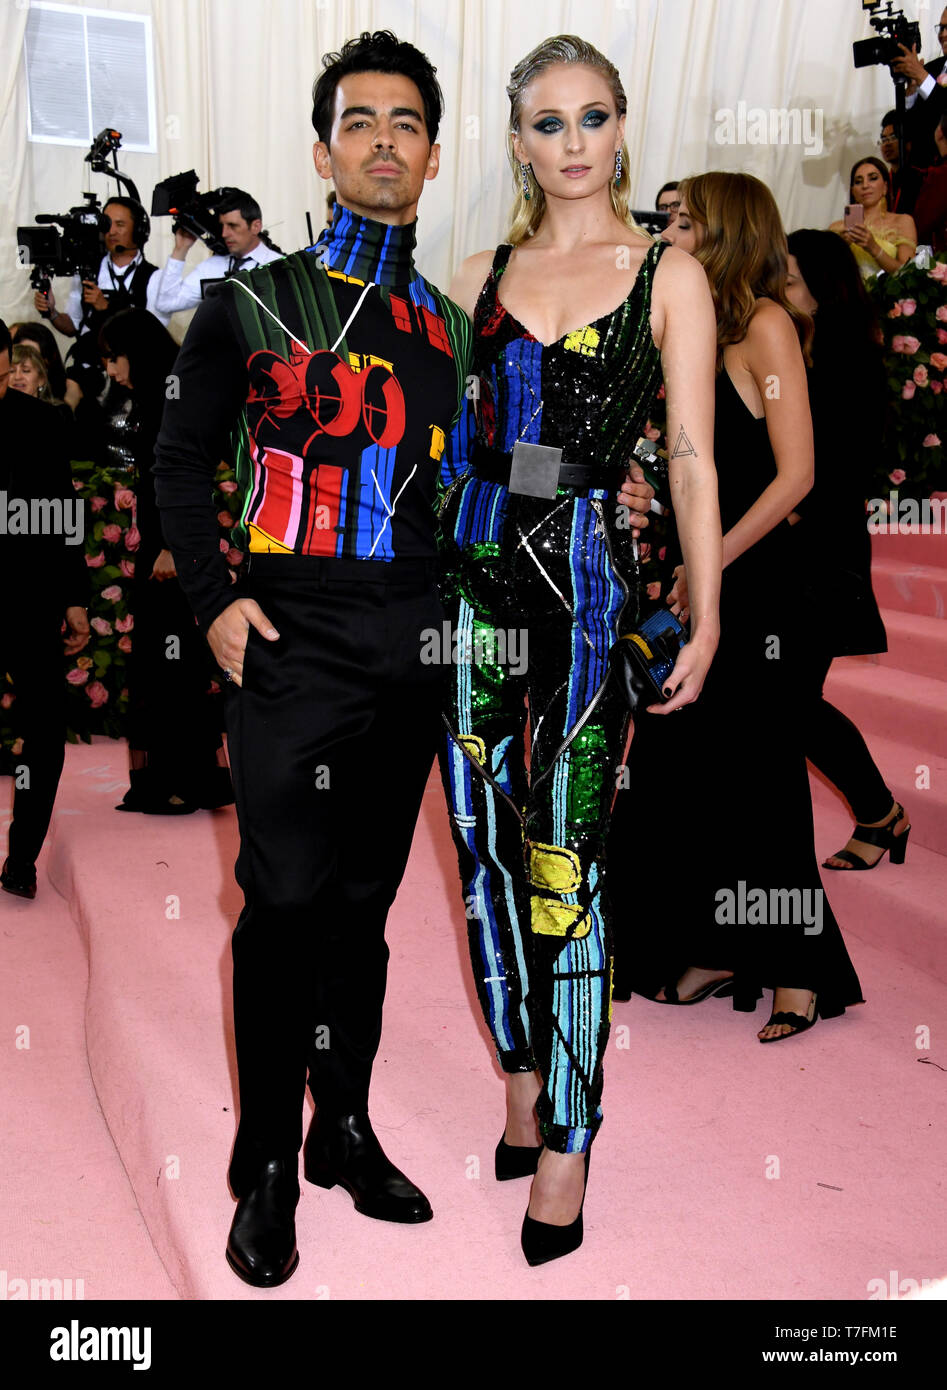 Joe Jonas & Sophie Turner Arrive on the Met Gala Red Carpet